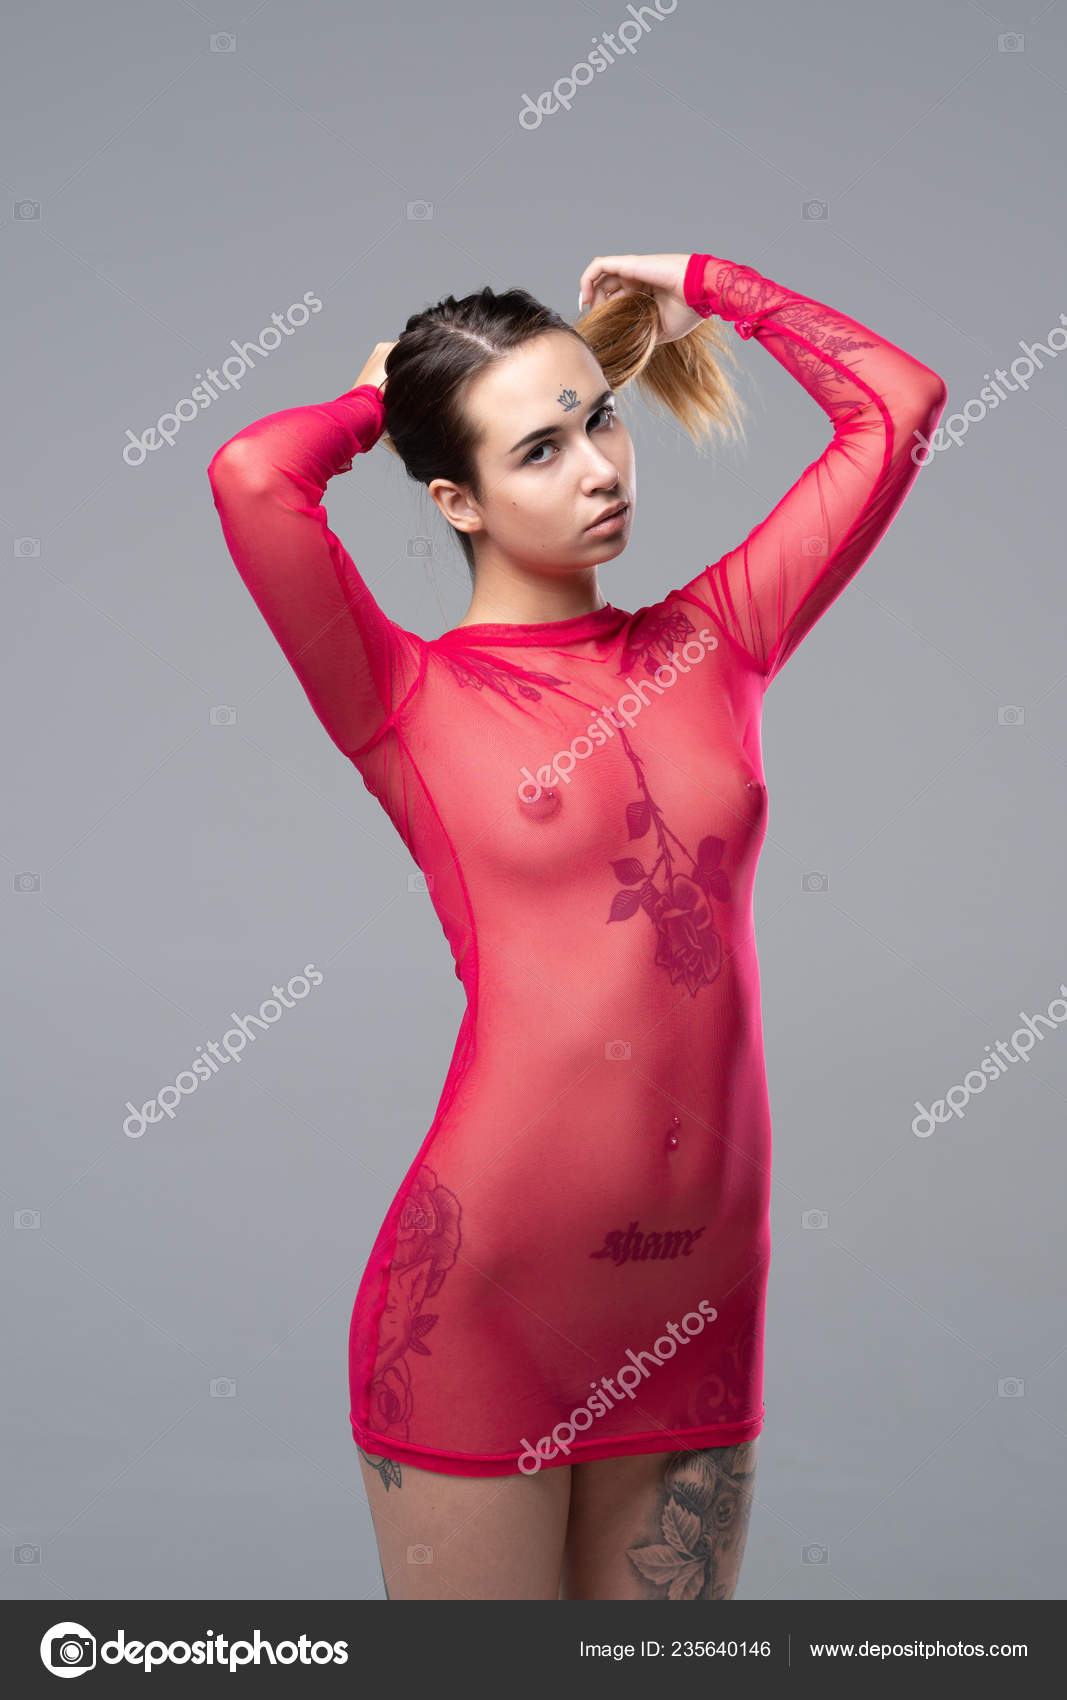 https://st4n.depositphotos.com/10086424/23564/i/1600/depositphotos_235640146-stock-photo-young-beautiful-girl-posing-nude.jpg